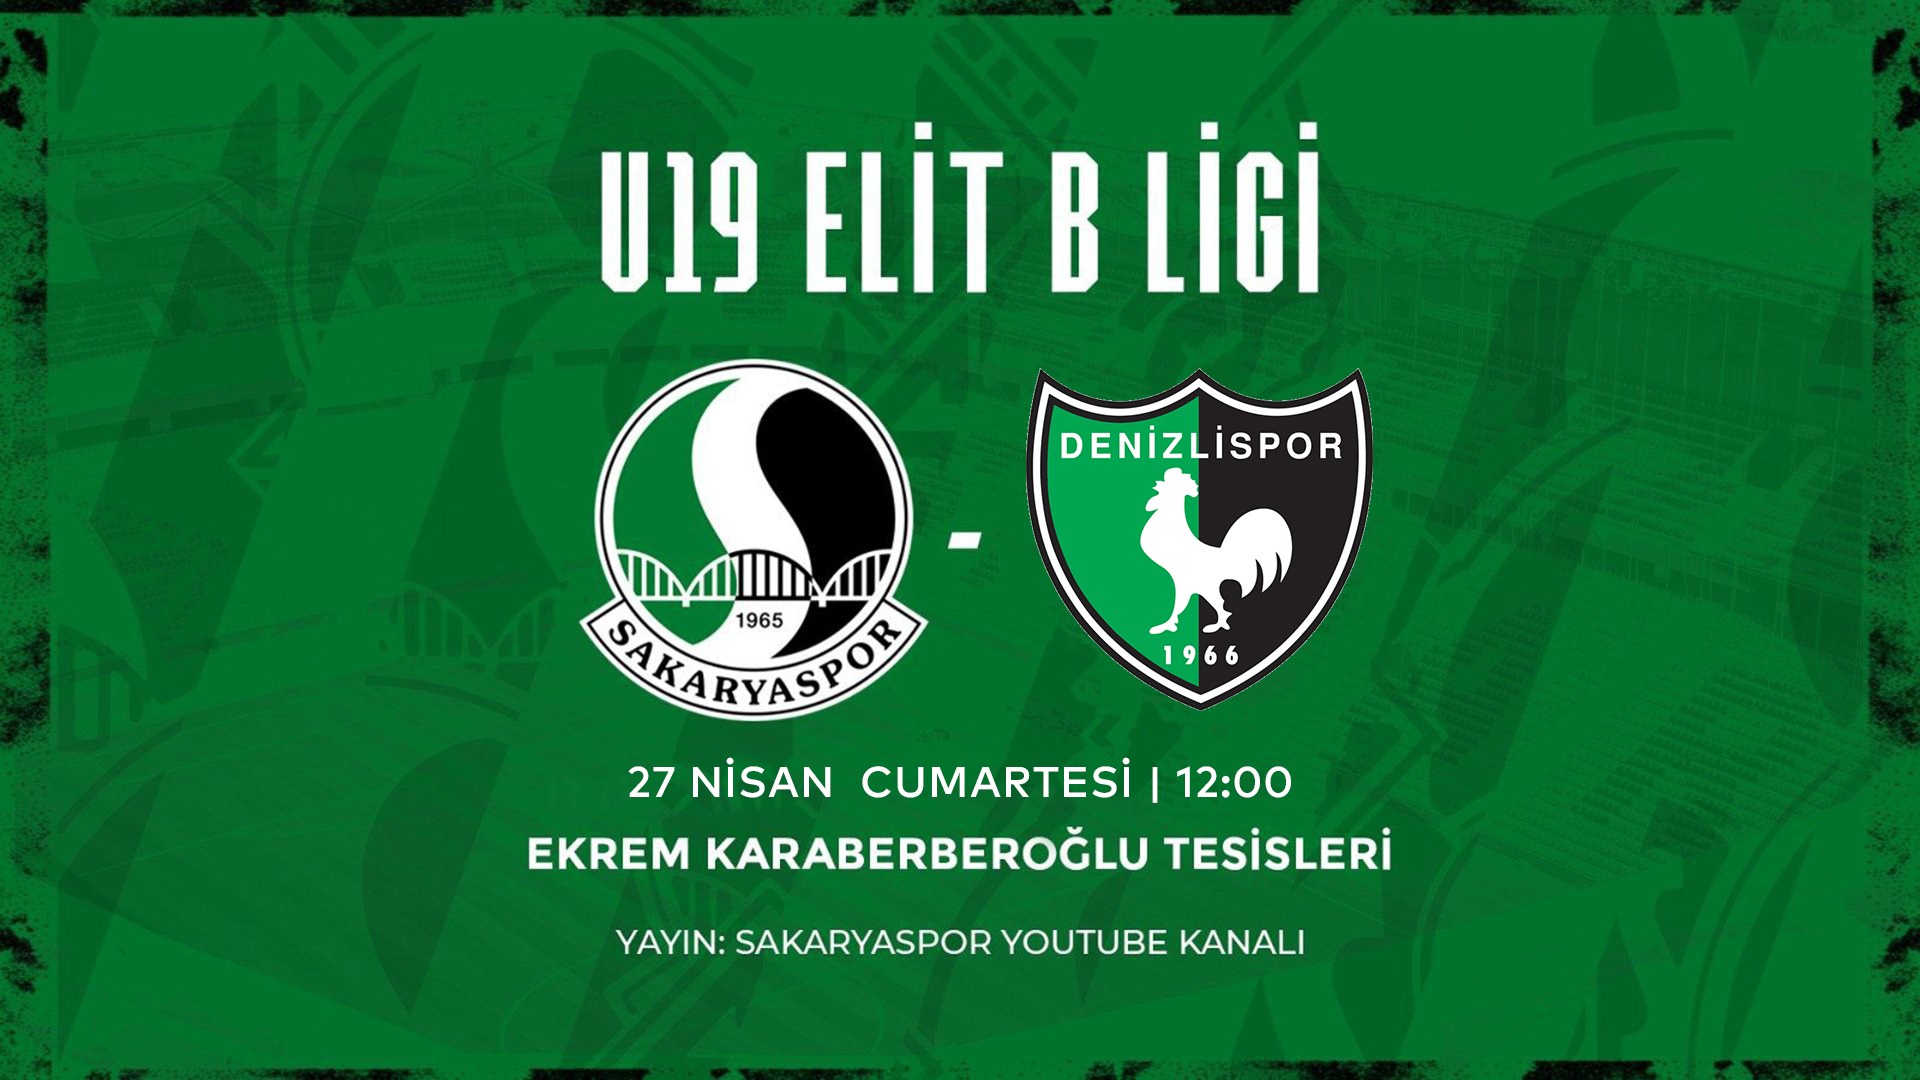 Sakaryaspor ve Denizlispor U19 Takımları Arasında Elit B Ligi Mücadelesi